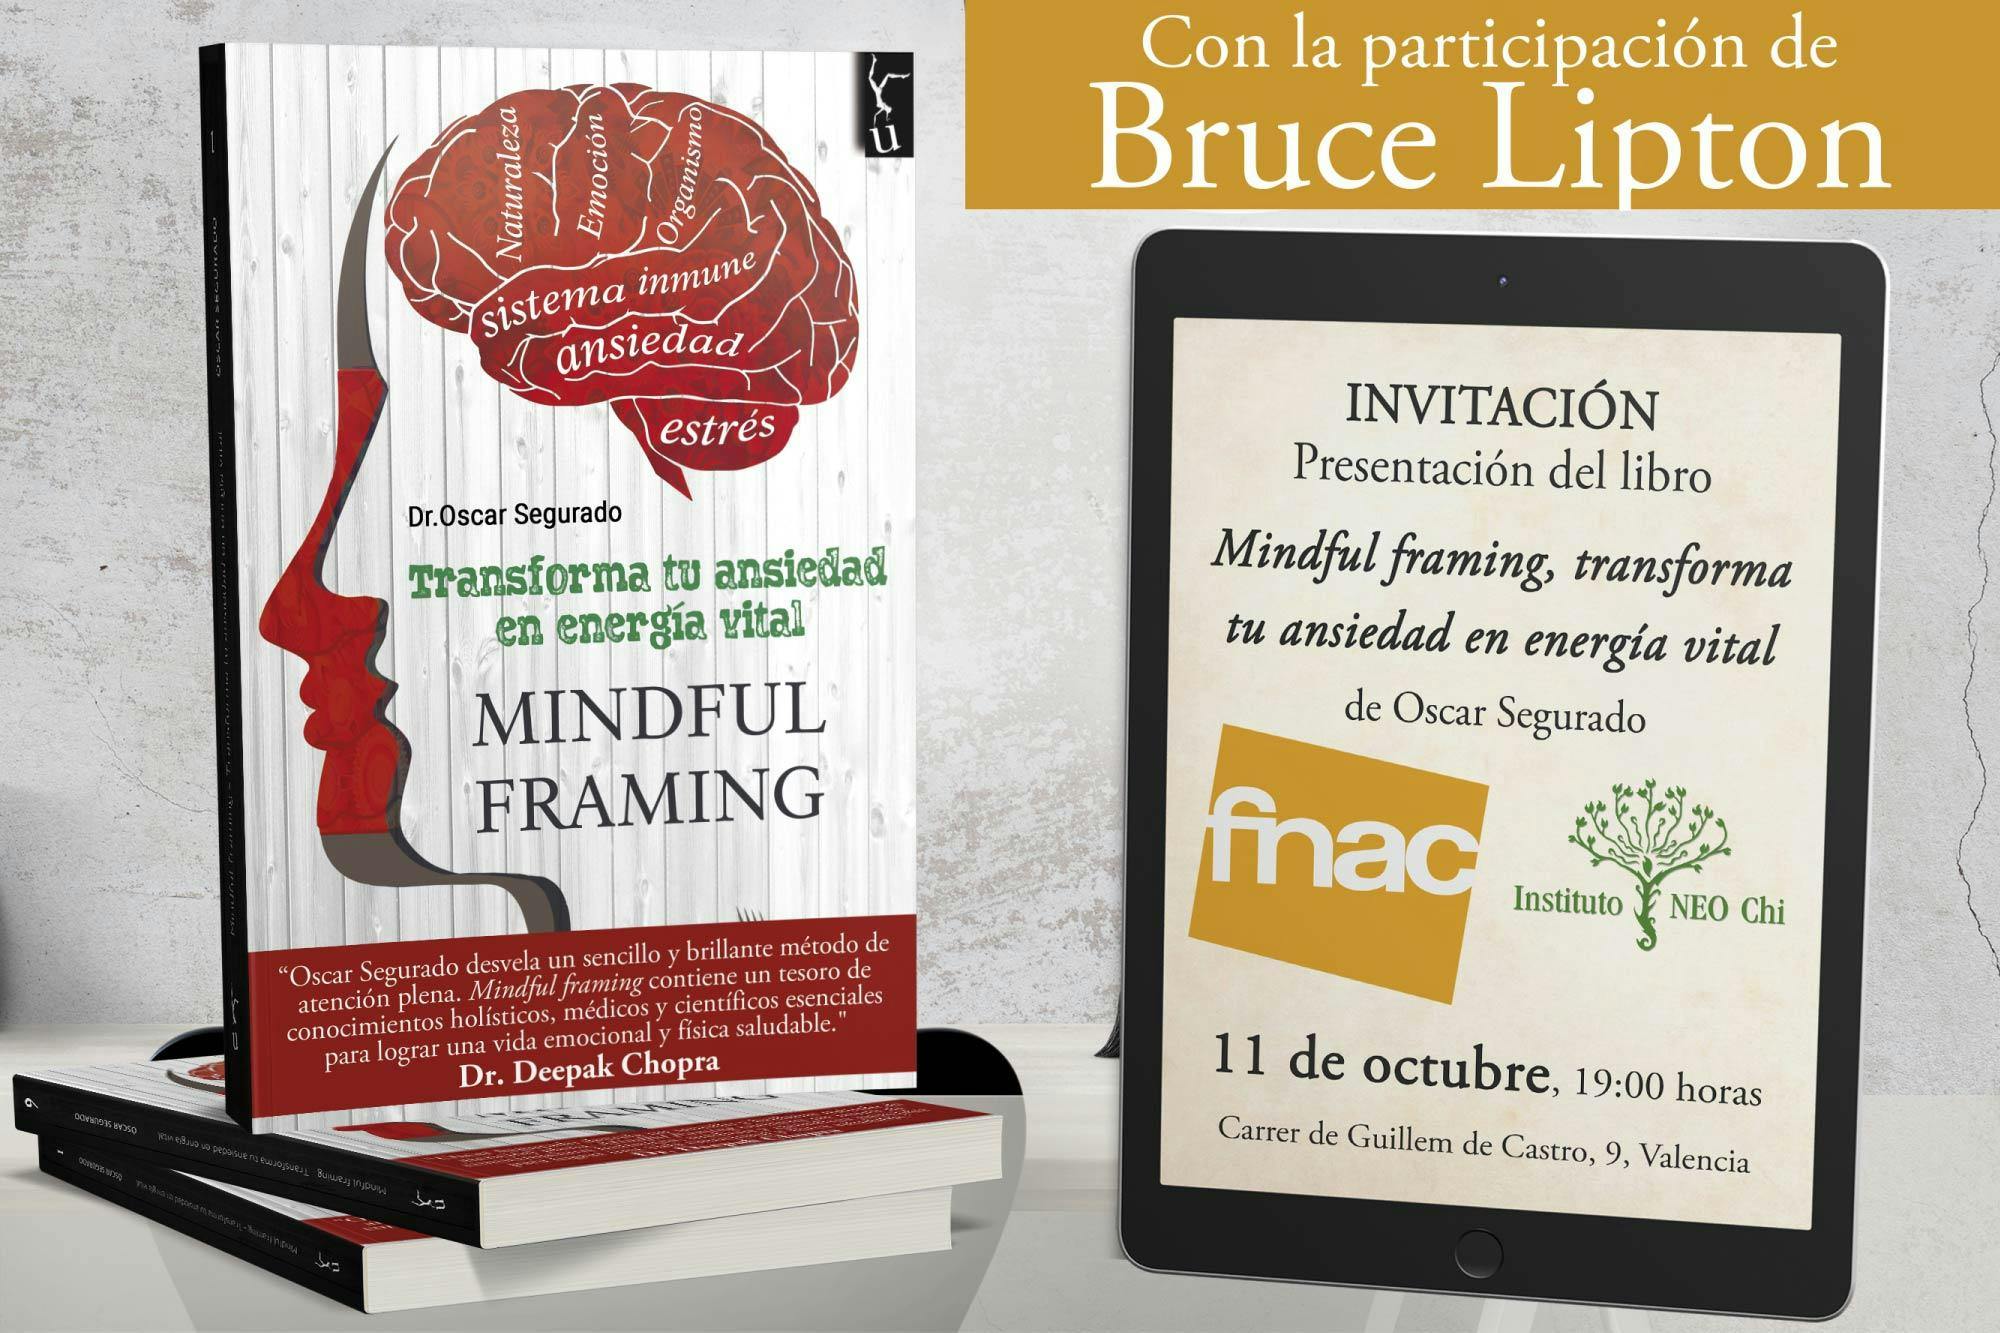 Presentación del libro Mindful framing, de Oscar Segurado y Bruce Lipton.